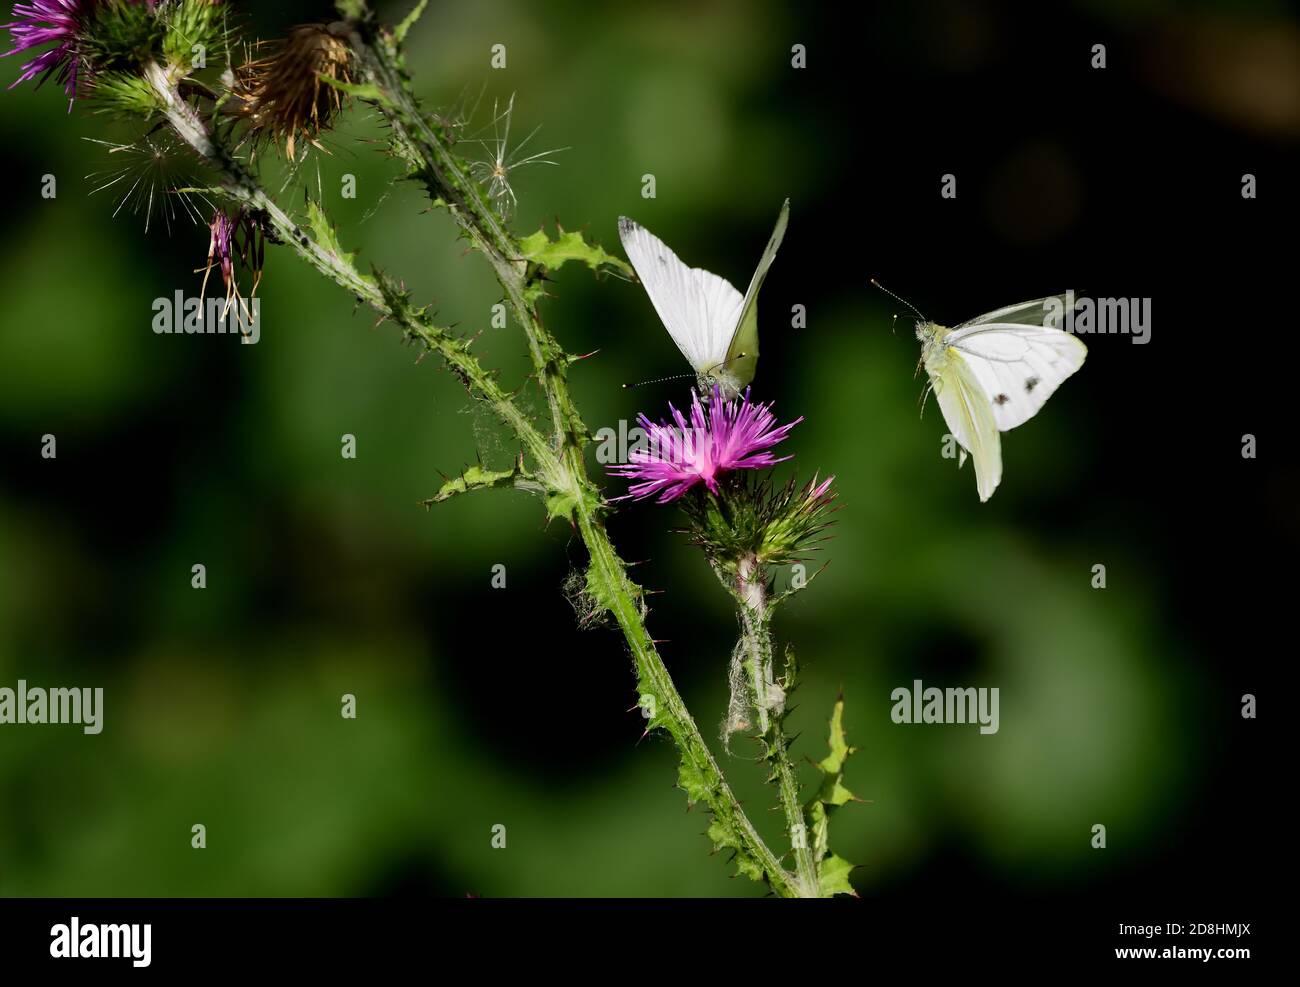 Macro fotografia di una coppia di bianchi venati verdi (Pieris napi), una farfalla della famiglia Pieridae, che vola nella fase di pre-accoppiamento. Foto Stock